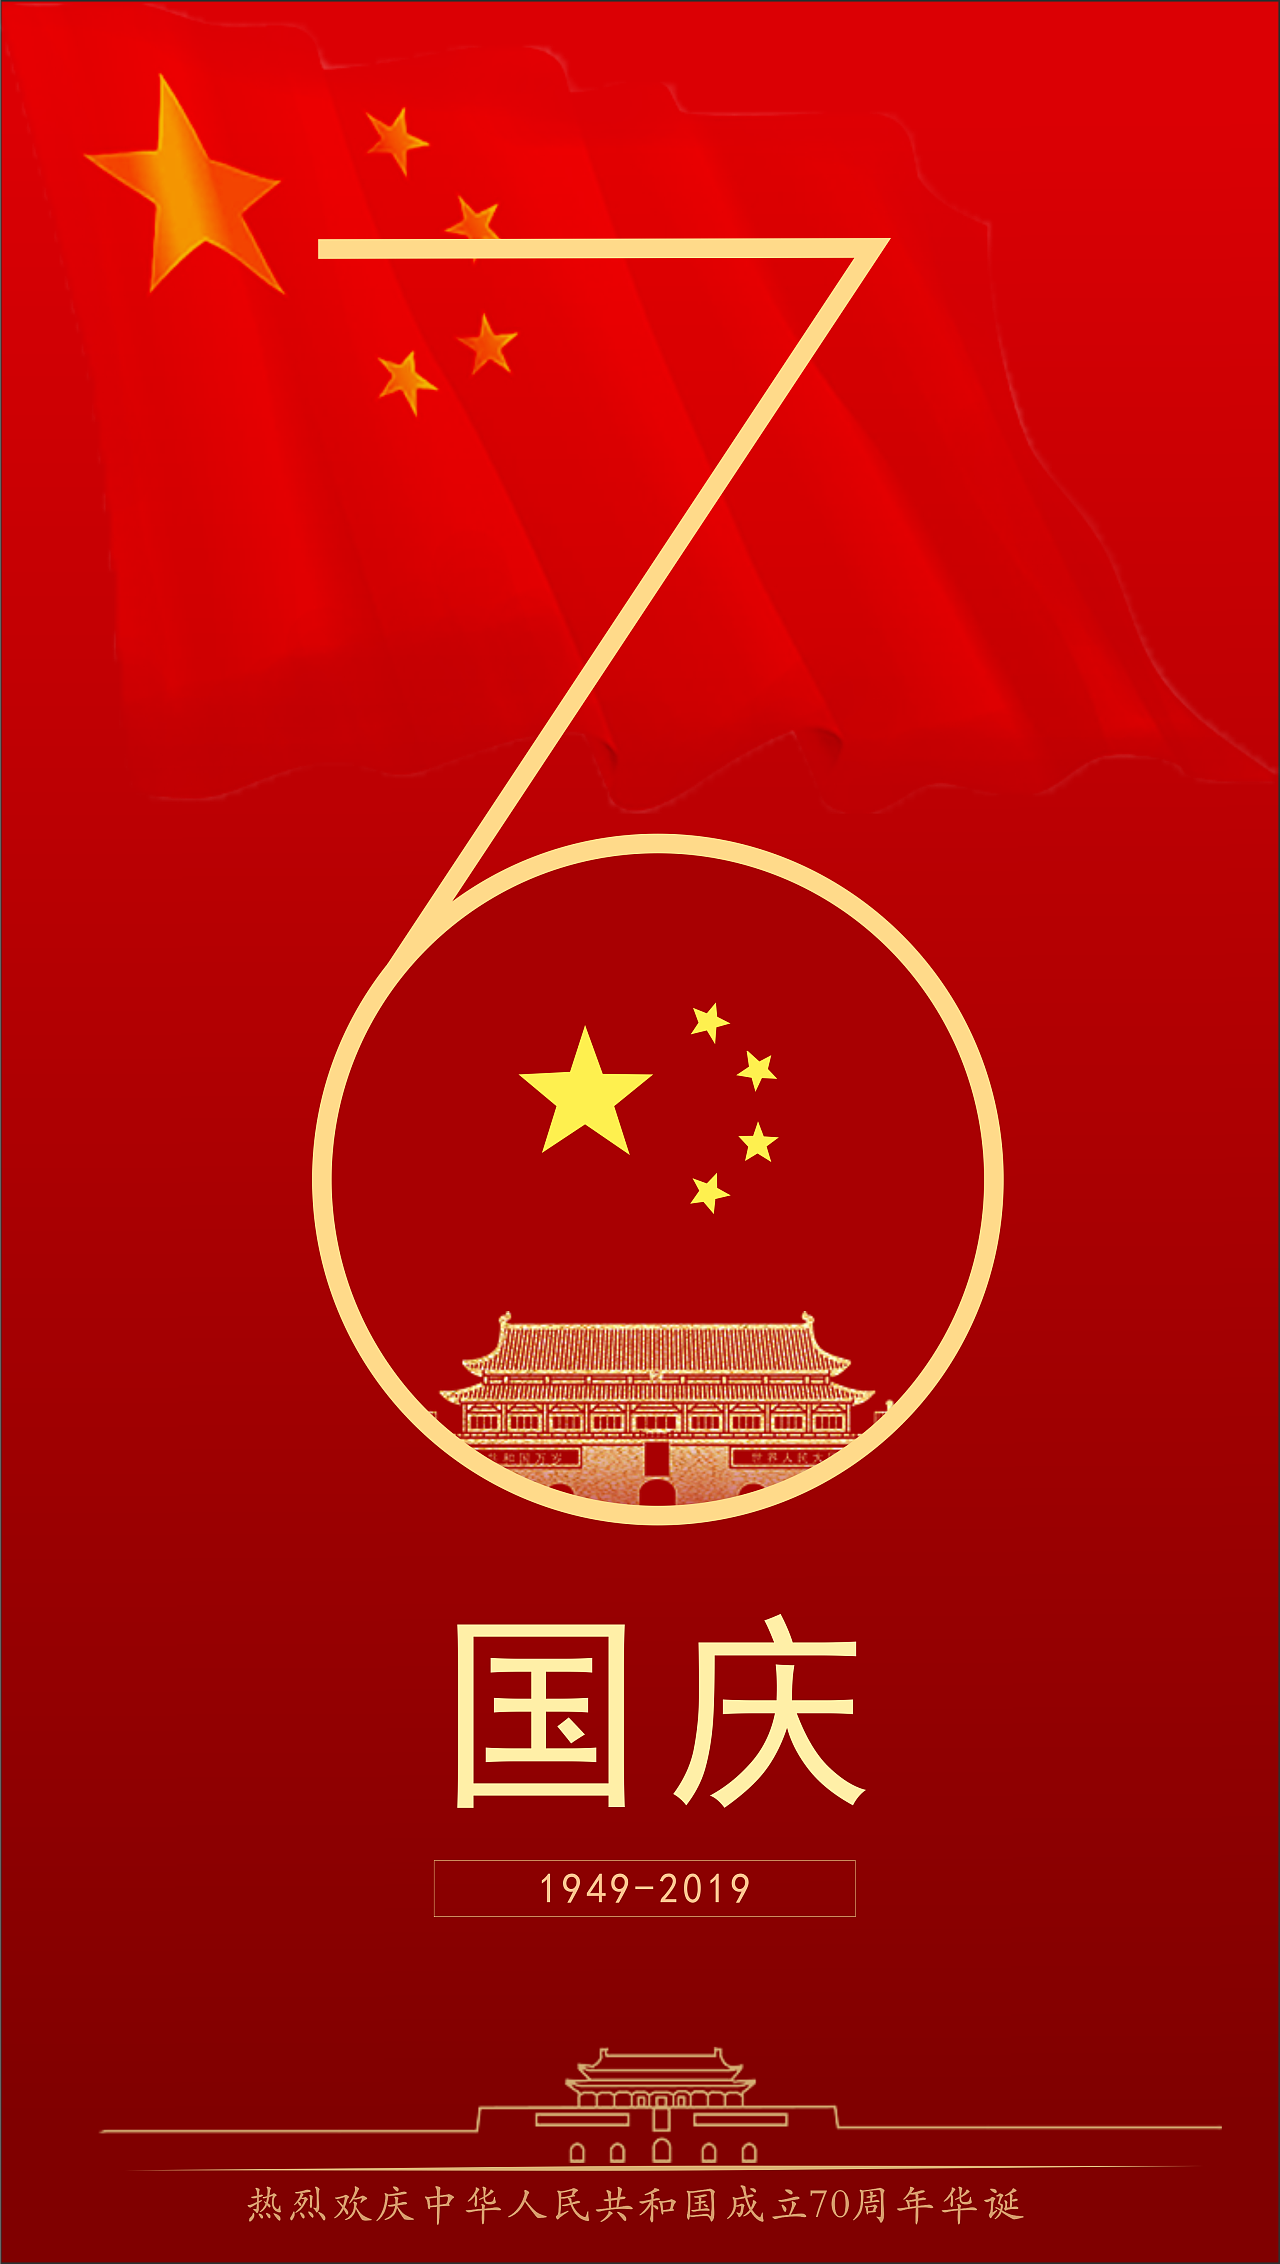 庆祝中华人民共和国成立69周年-陕西柯蓝电子有限公司